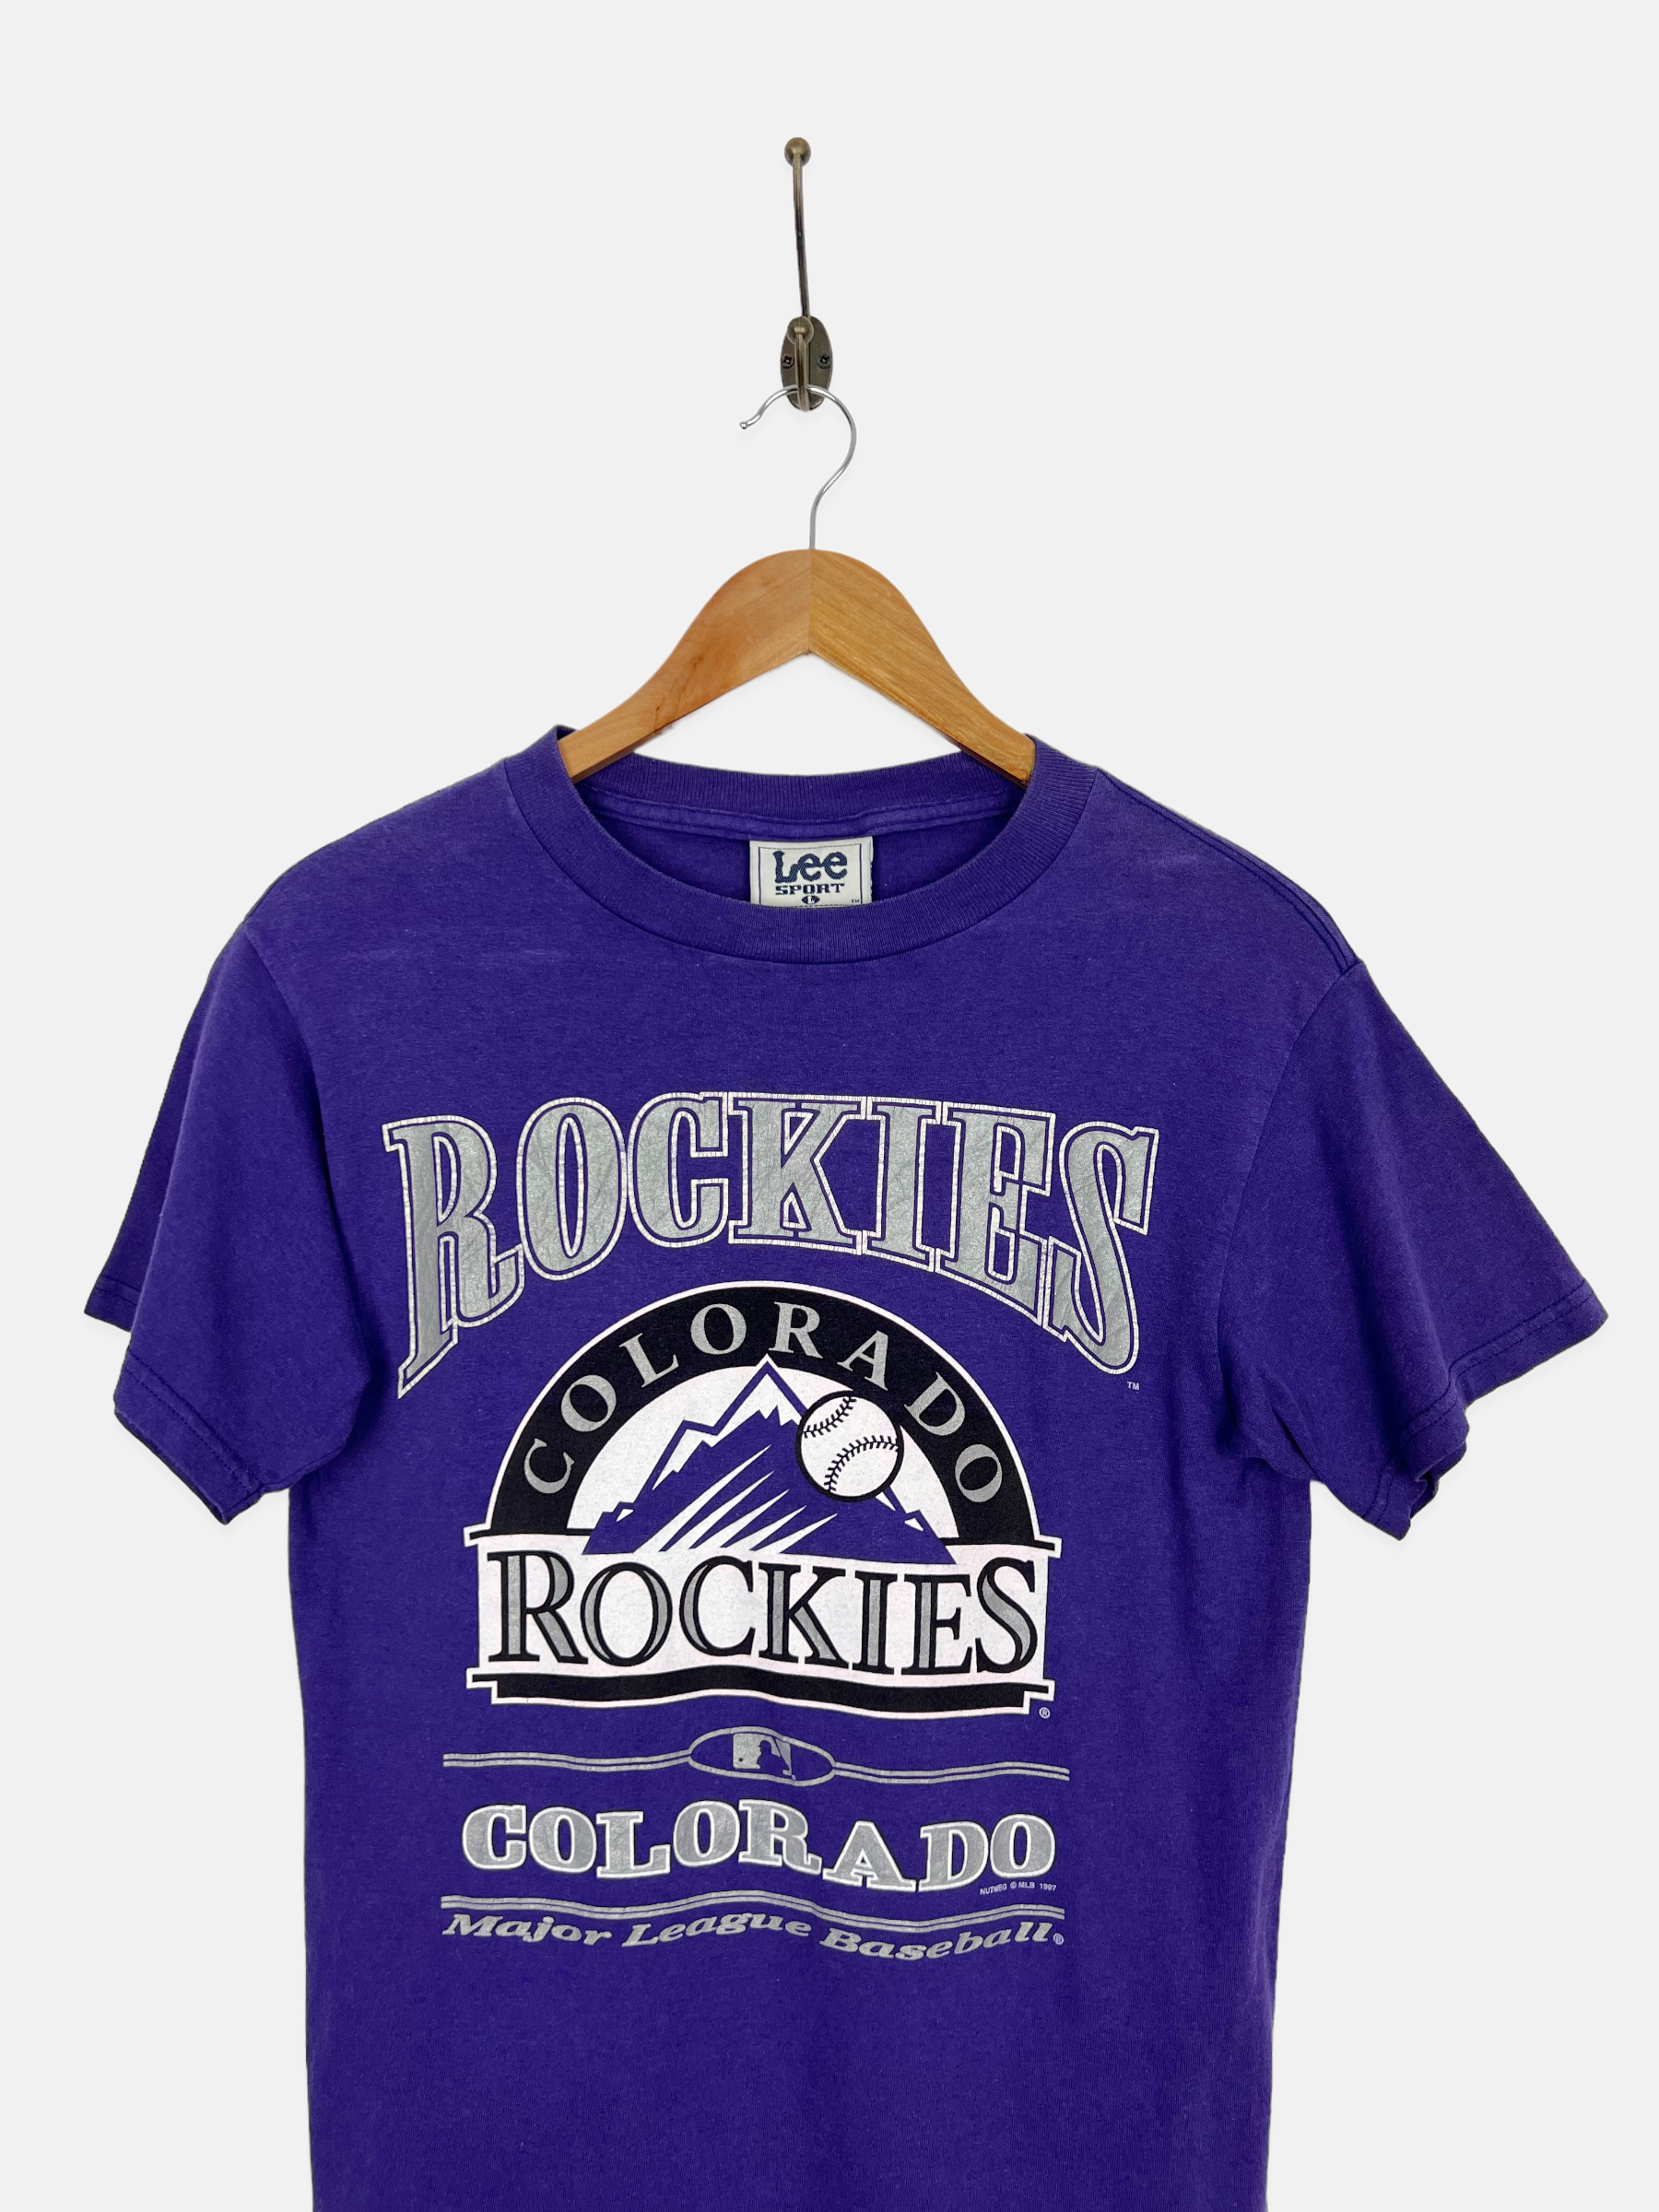 Vintage 90s T-shirt Colorado ROCKIES Baseball Nutmeg Mlb Black